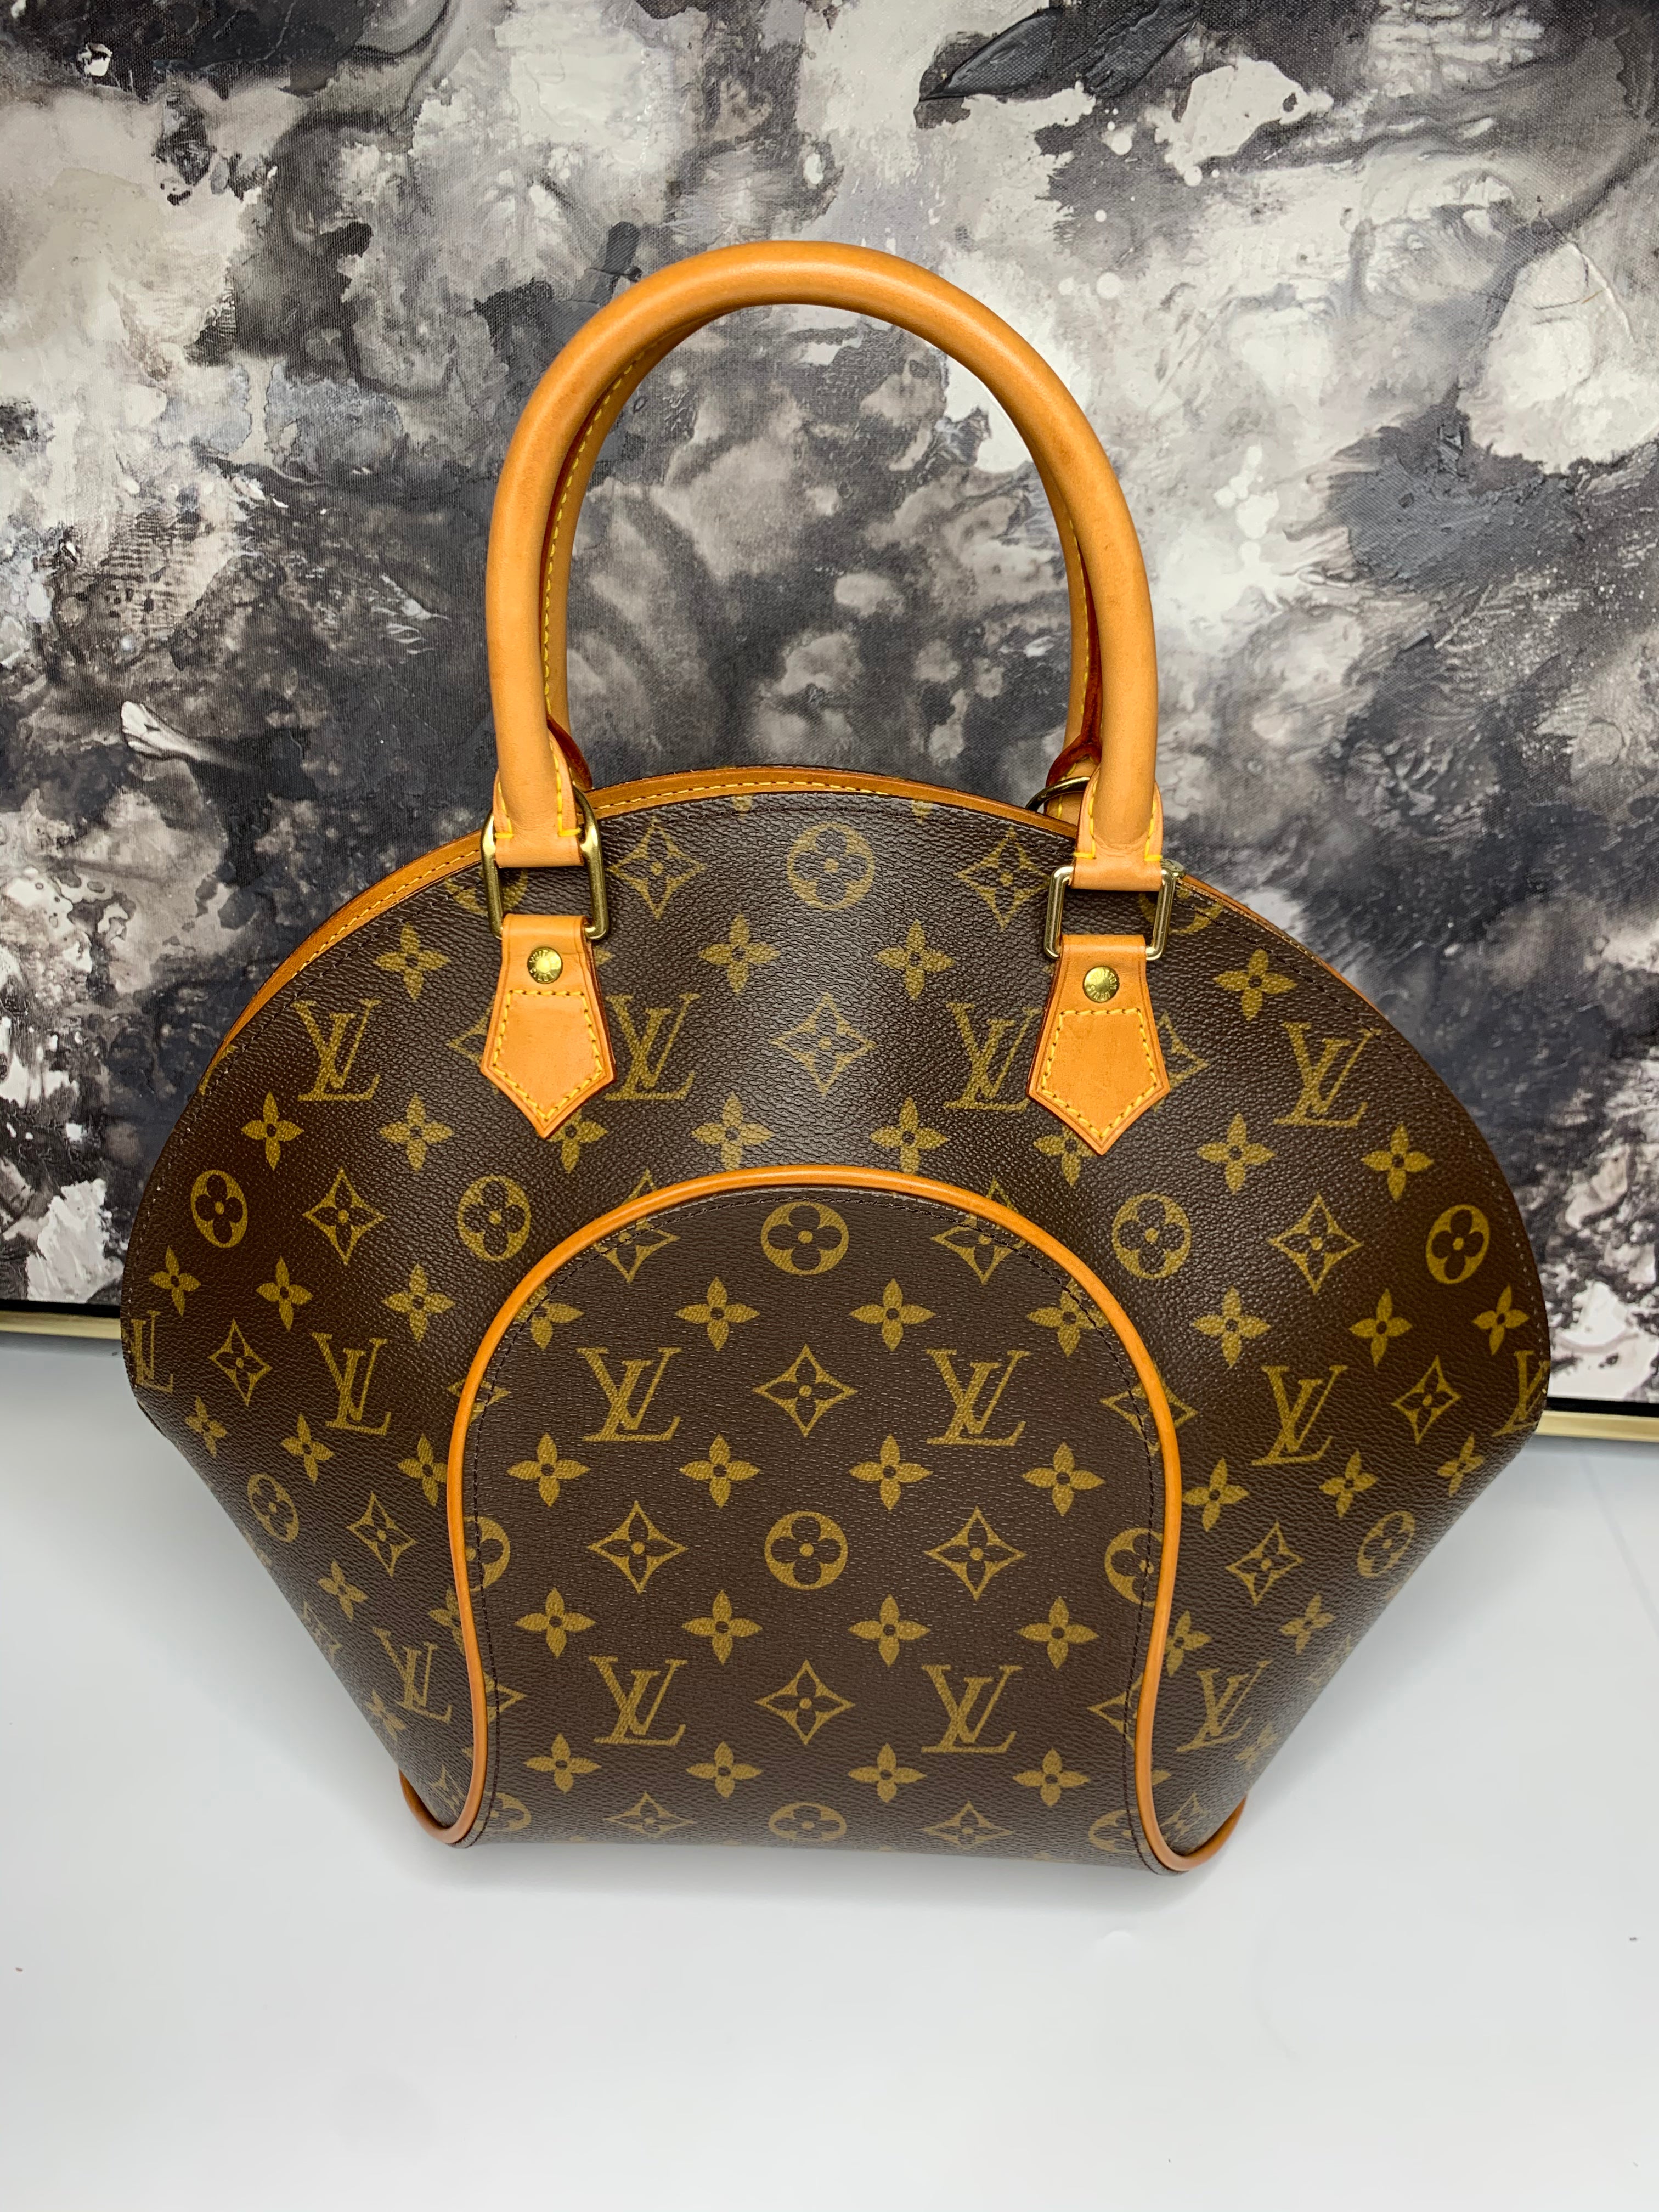 Louis Vuitton Ellipse MM Handbag, Size: Med, Aprx